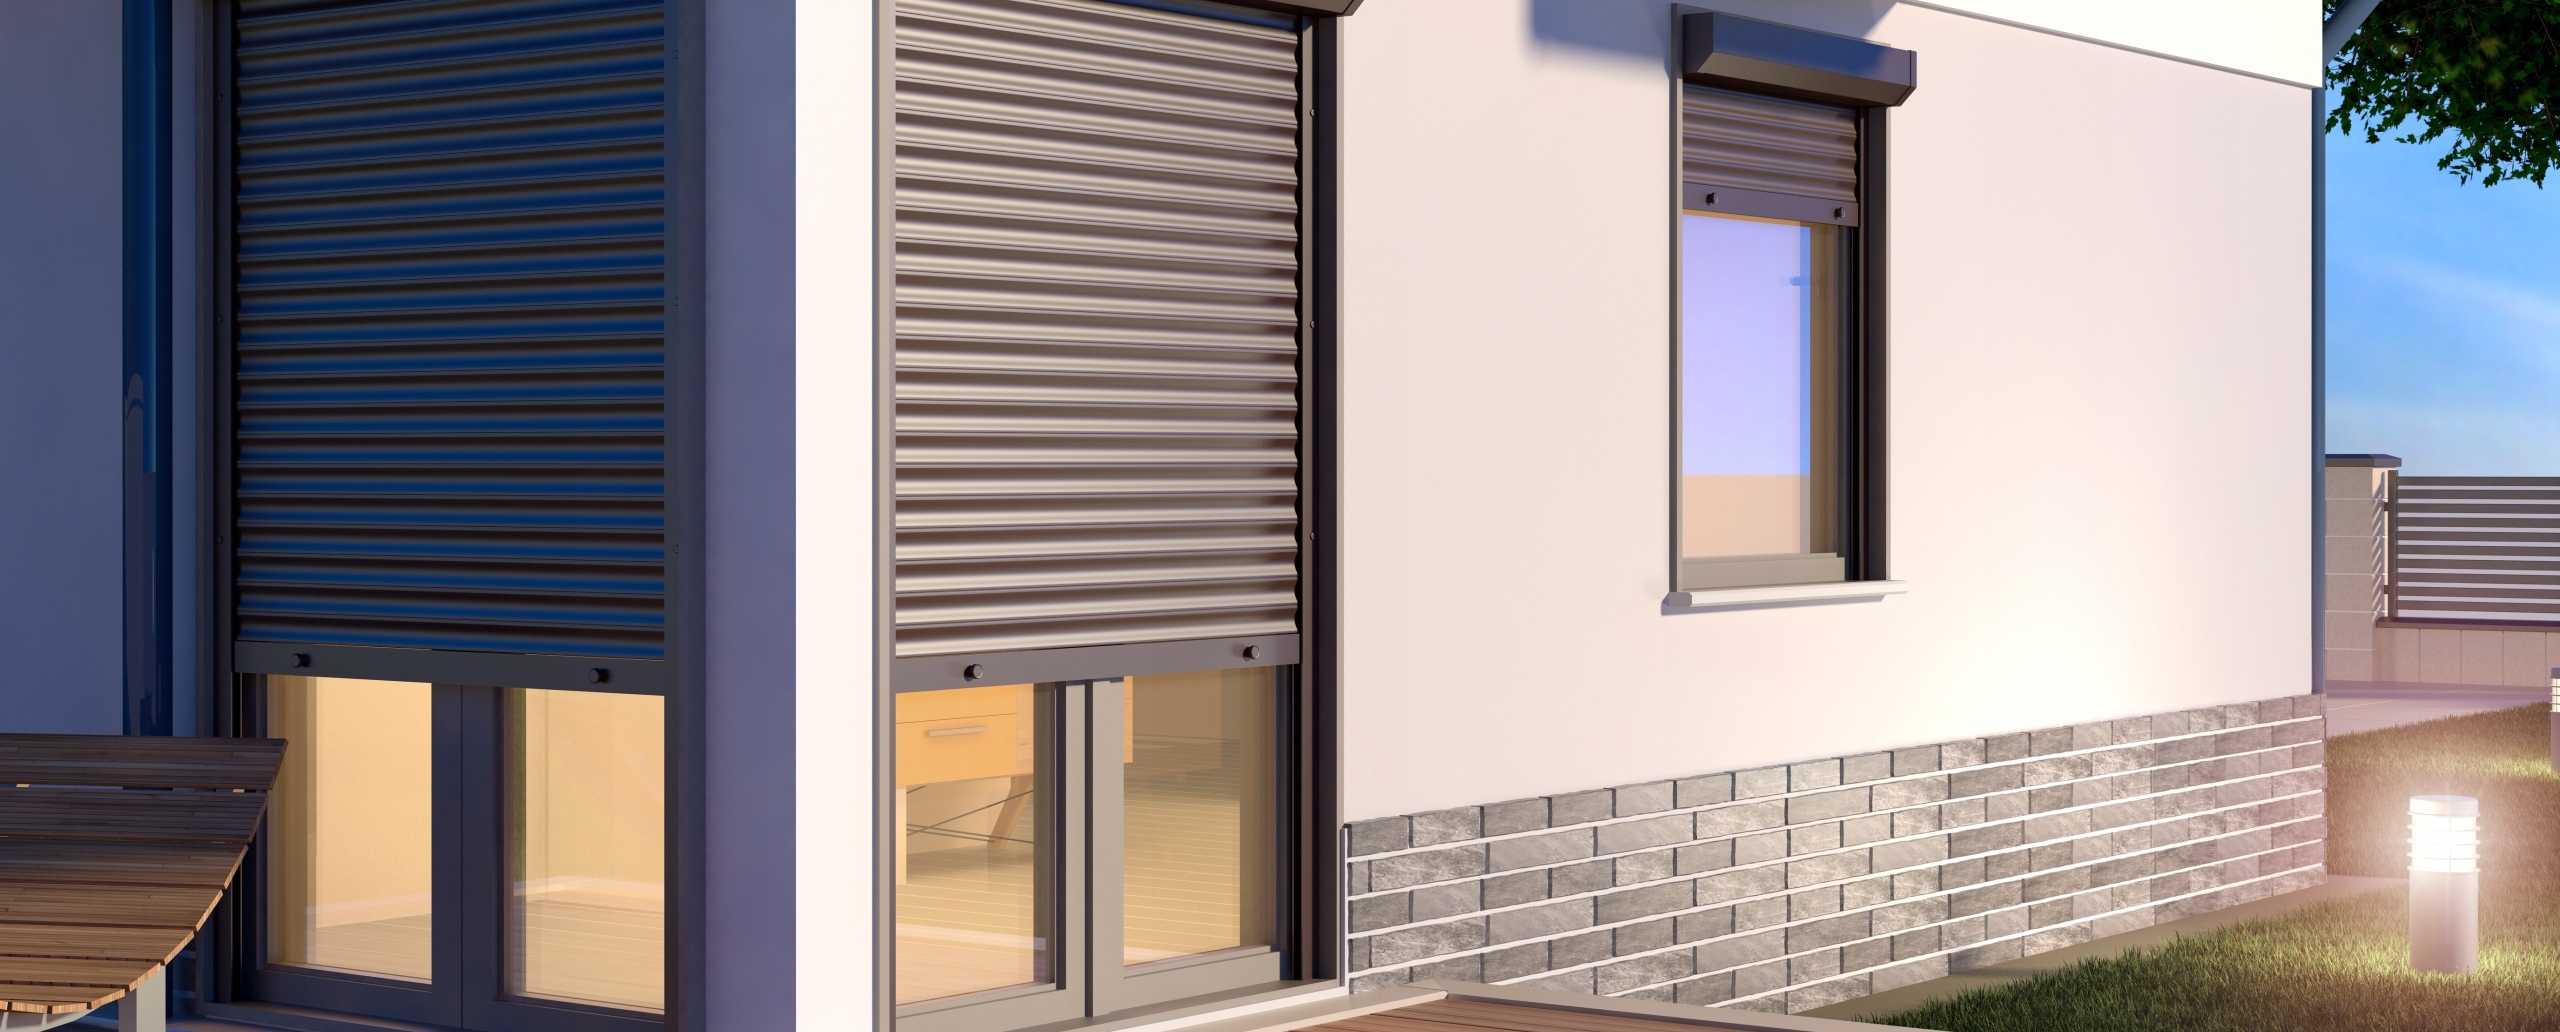 Теплые алюминиевые окна — преимущества и недостатки